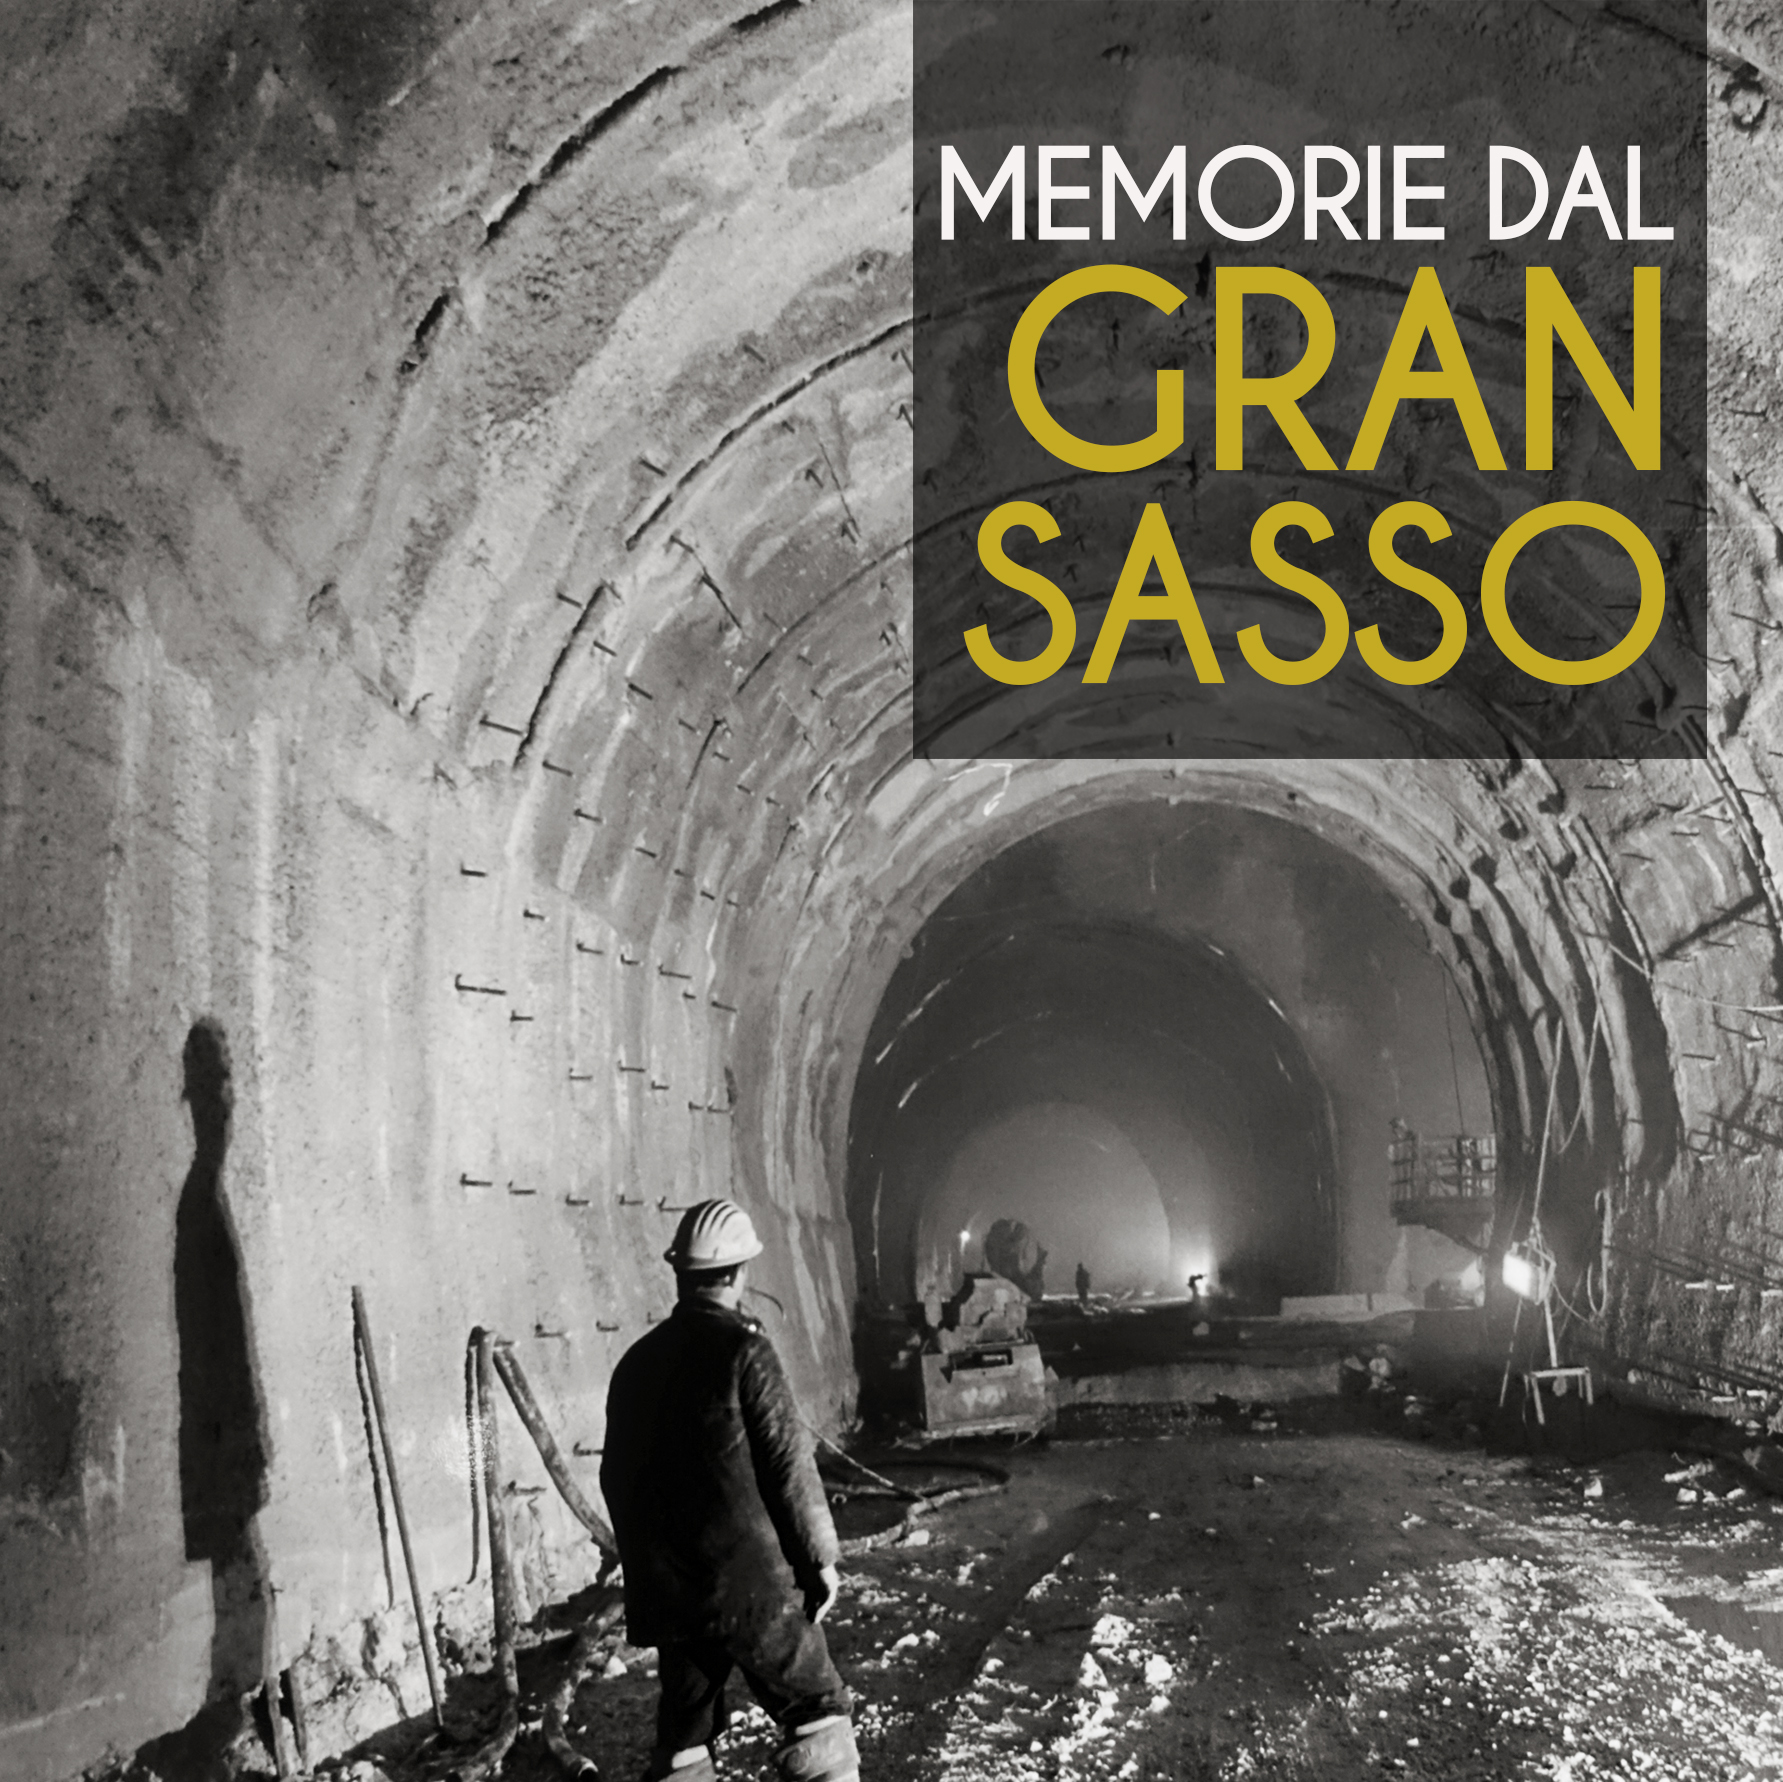 Le gallerie Il Gran Sasso d'Italia foto 1.